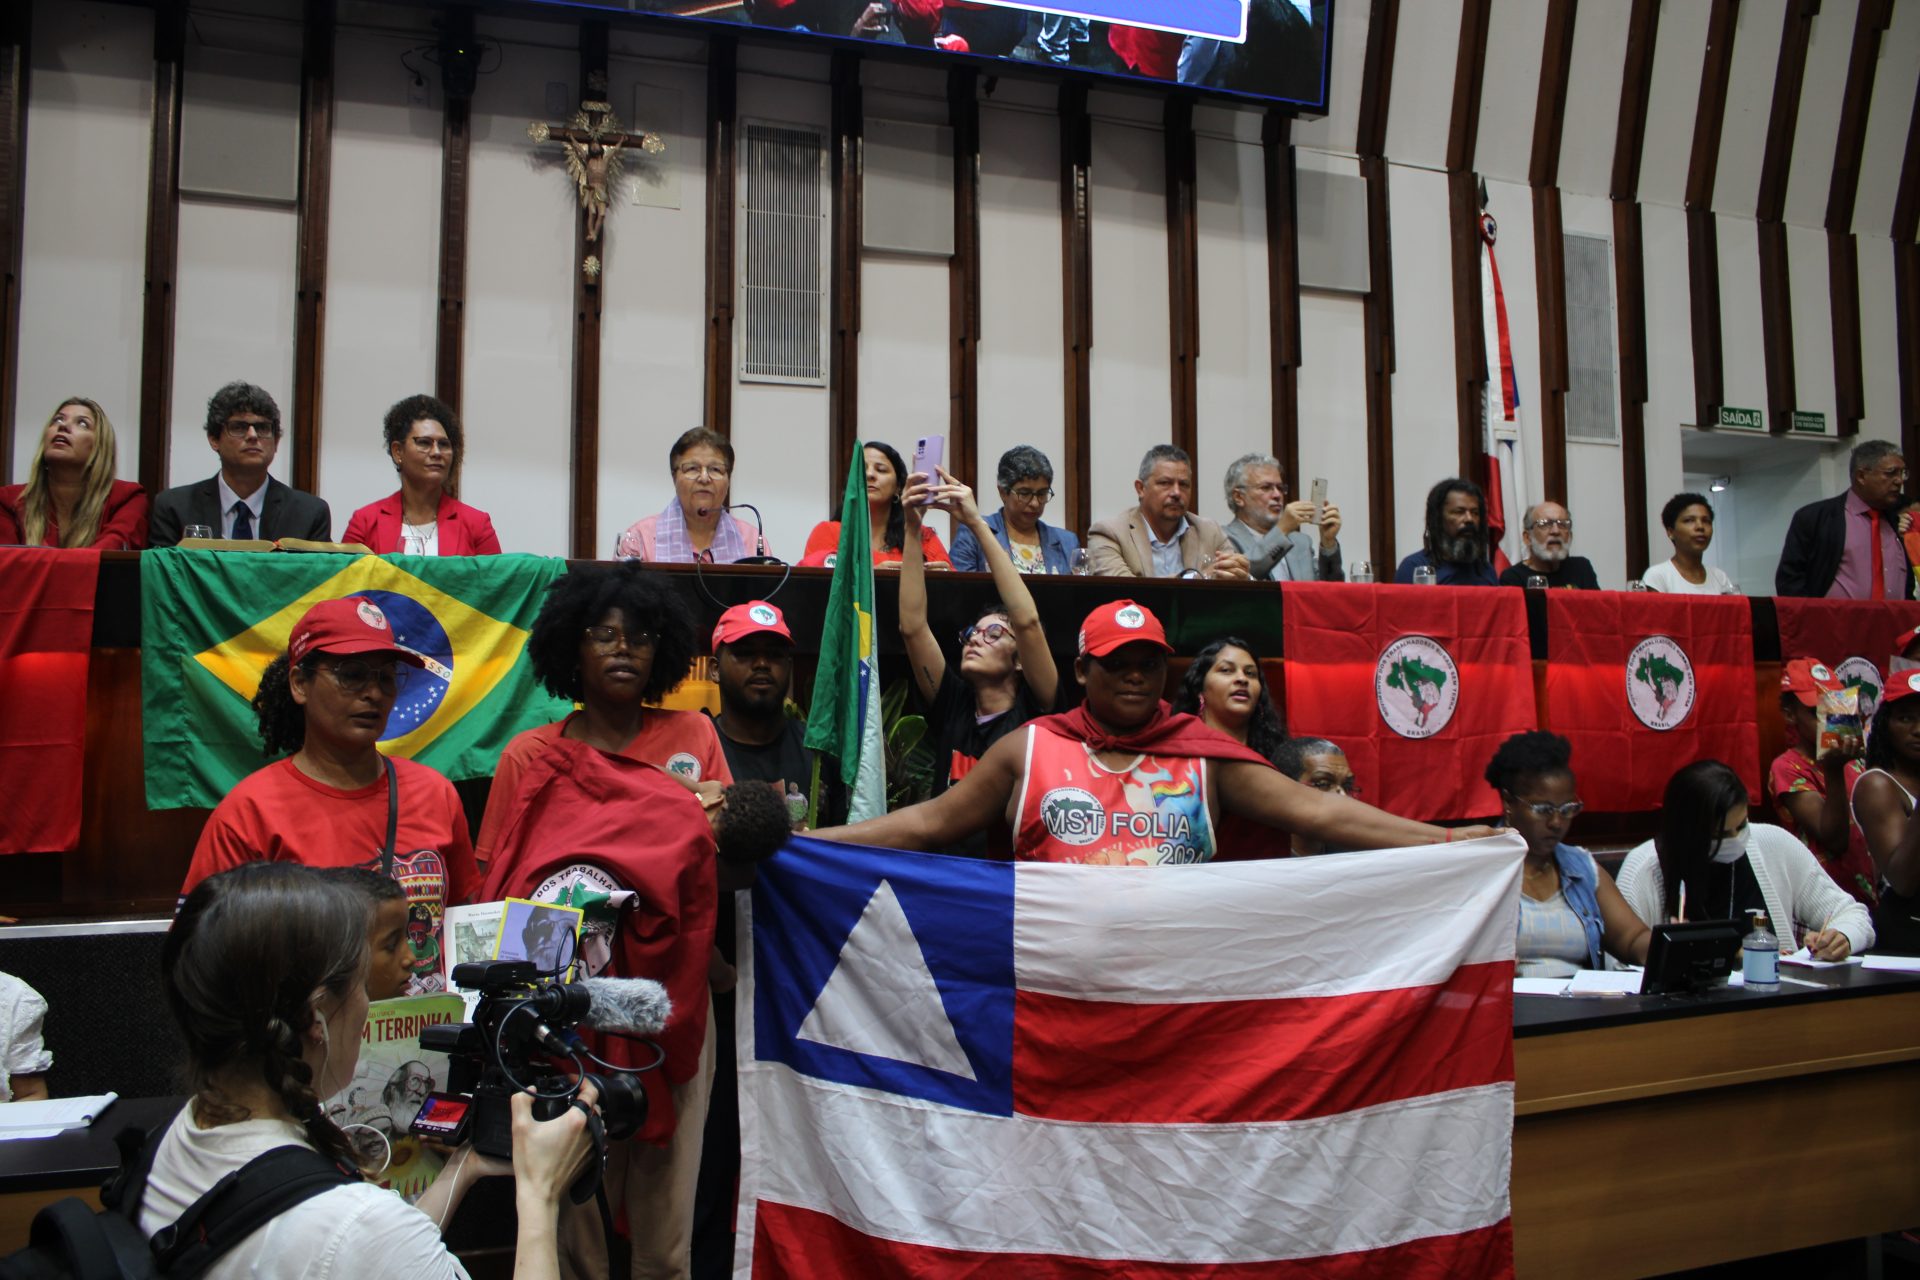 MST realiza ato em defesa da Reforma Agrária na Assembleia Legislativa da Bahia